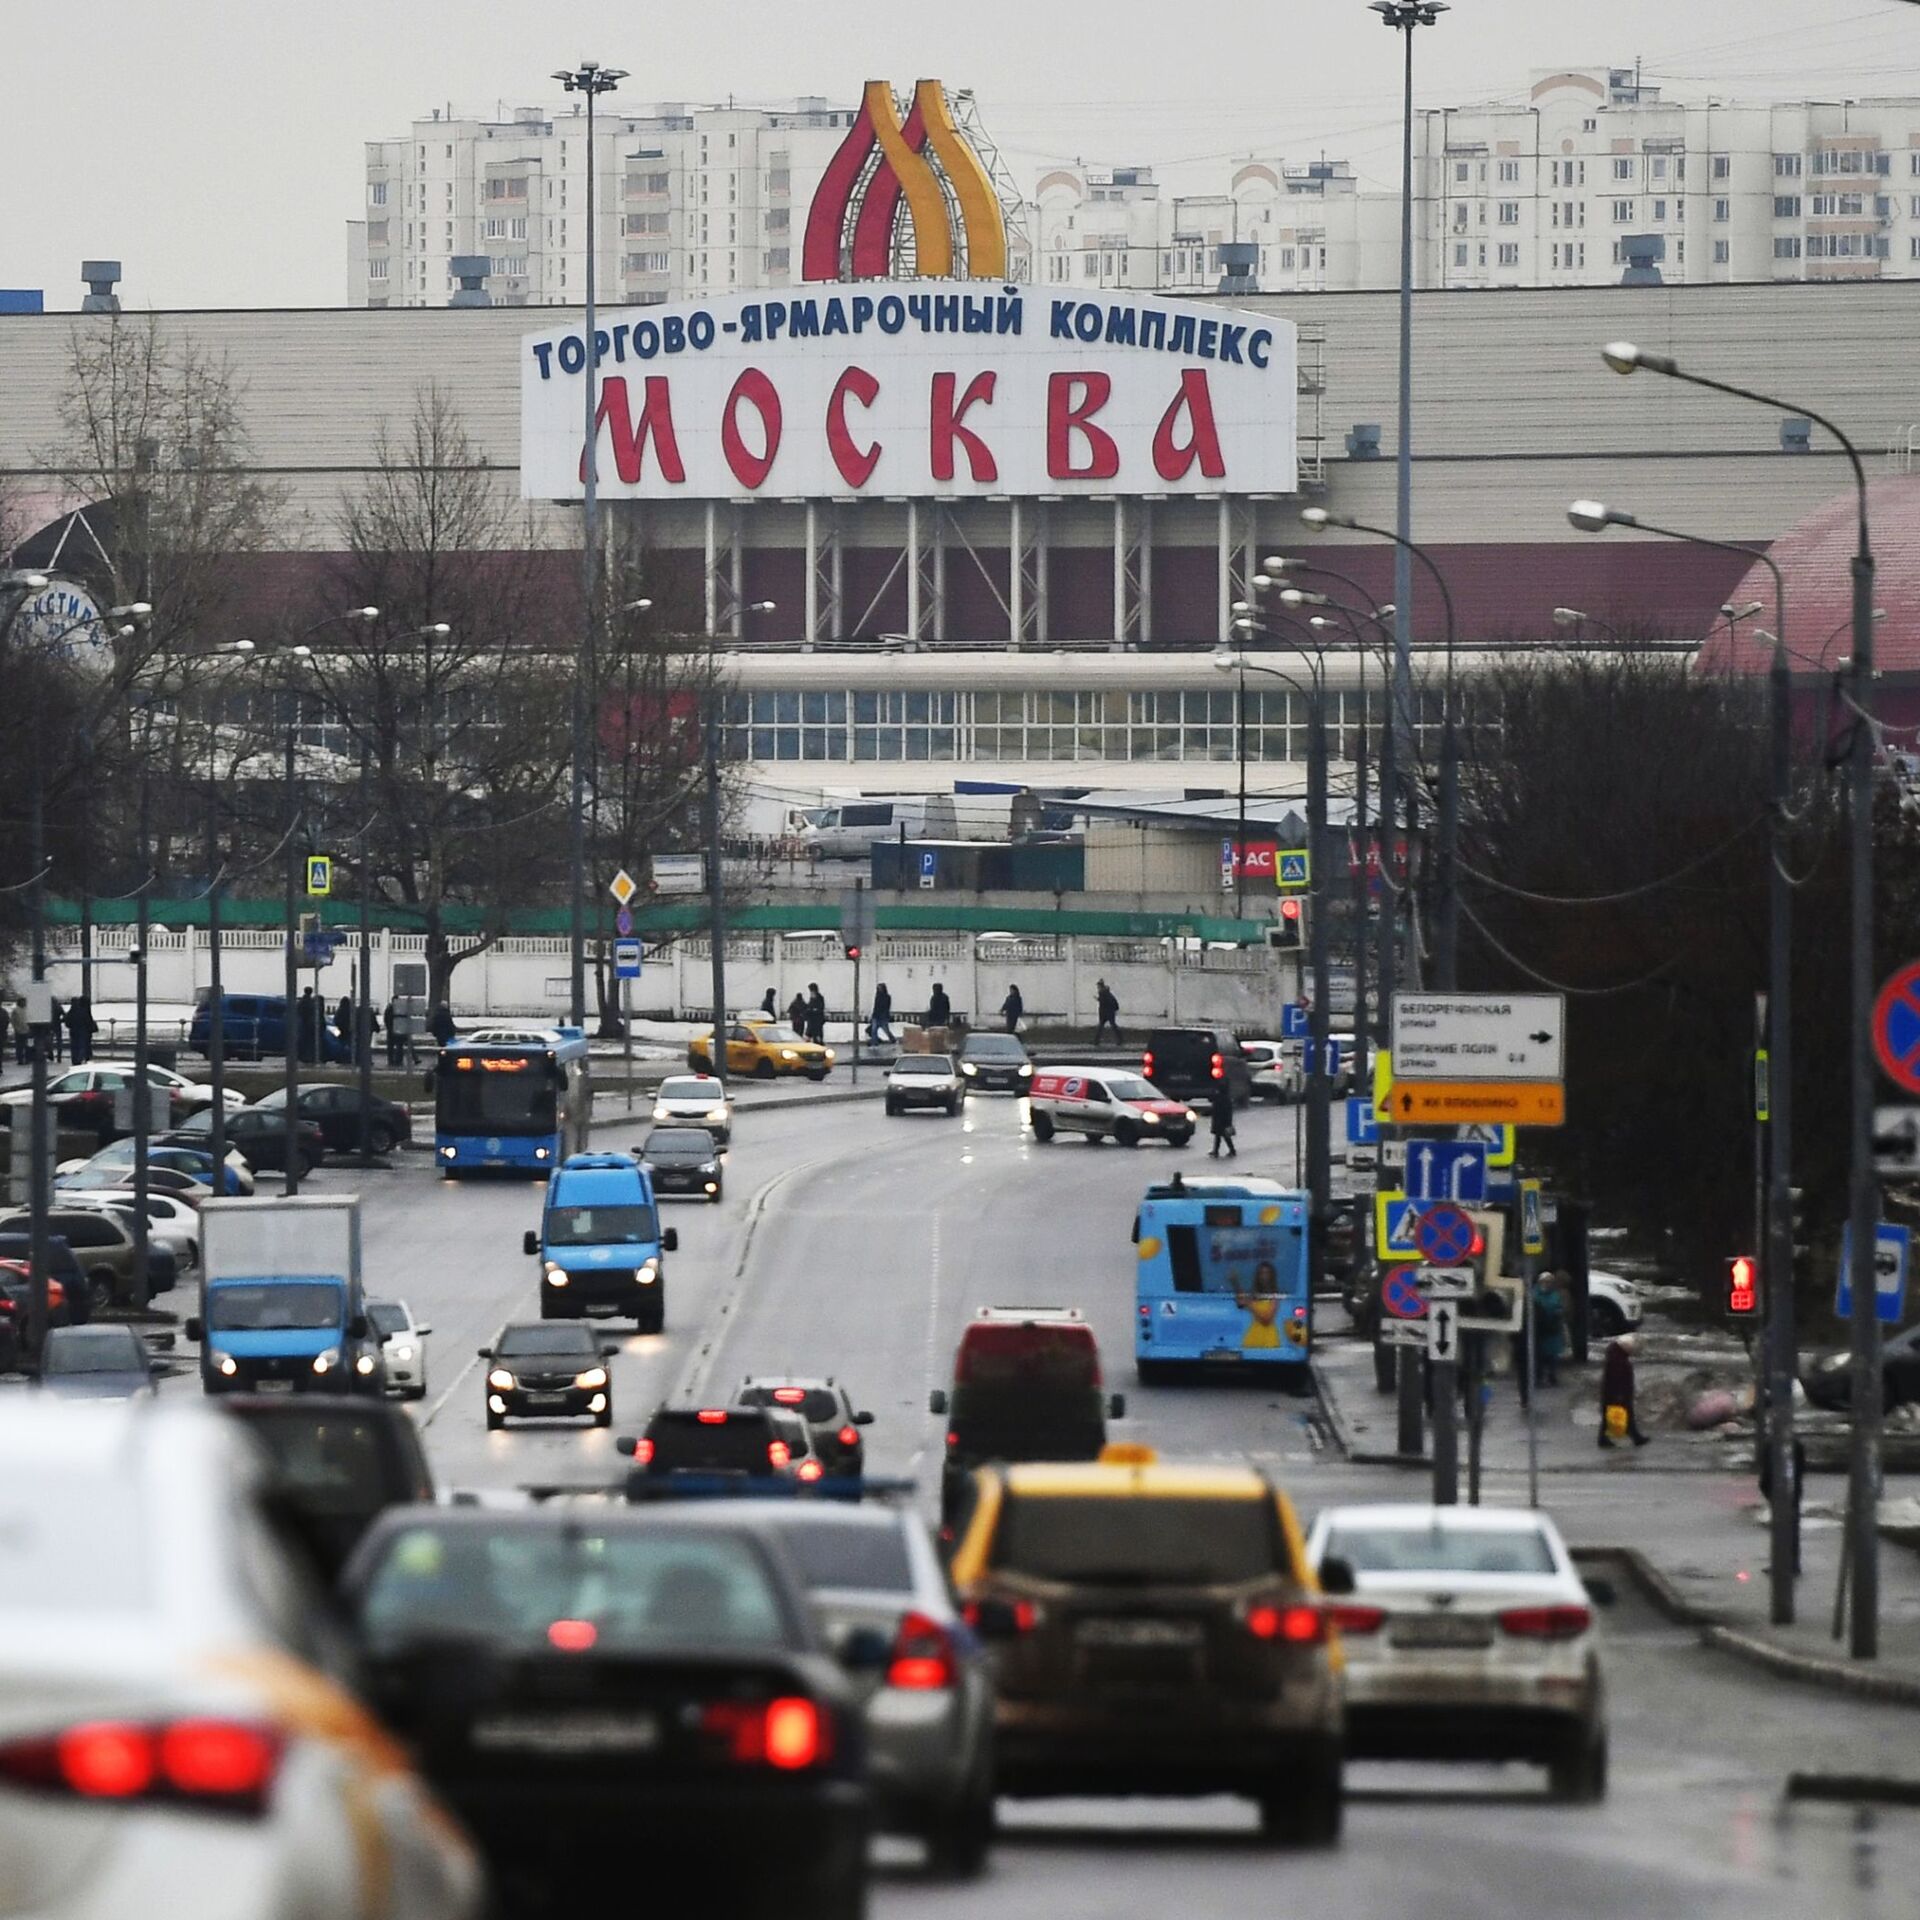 Торговый комплекс Москва